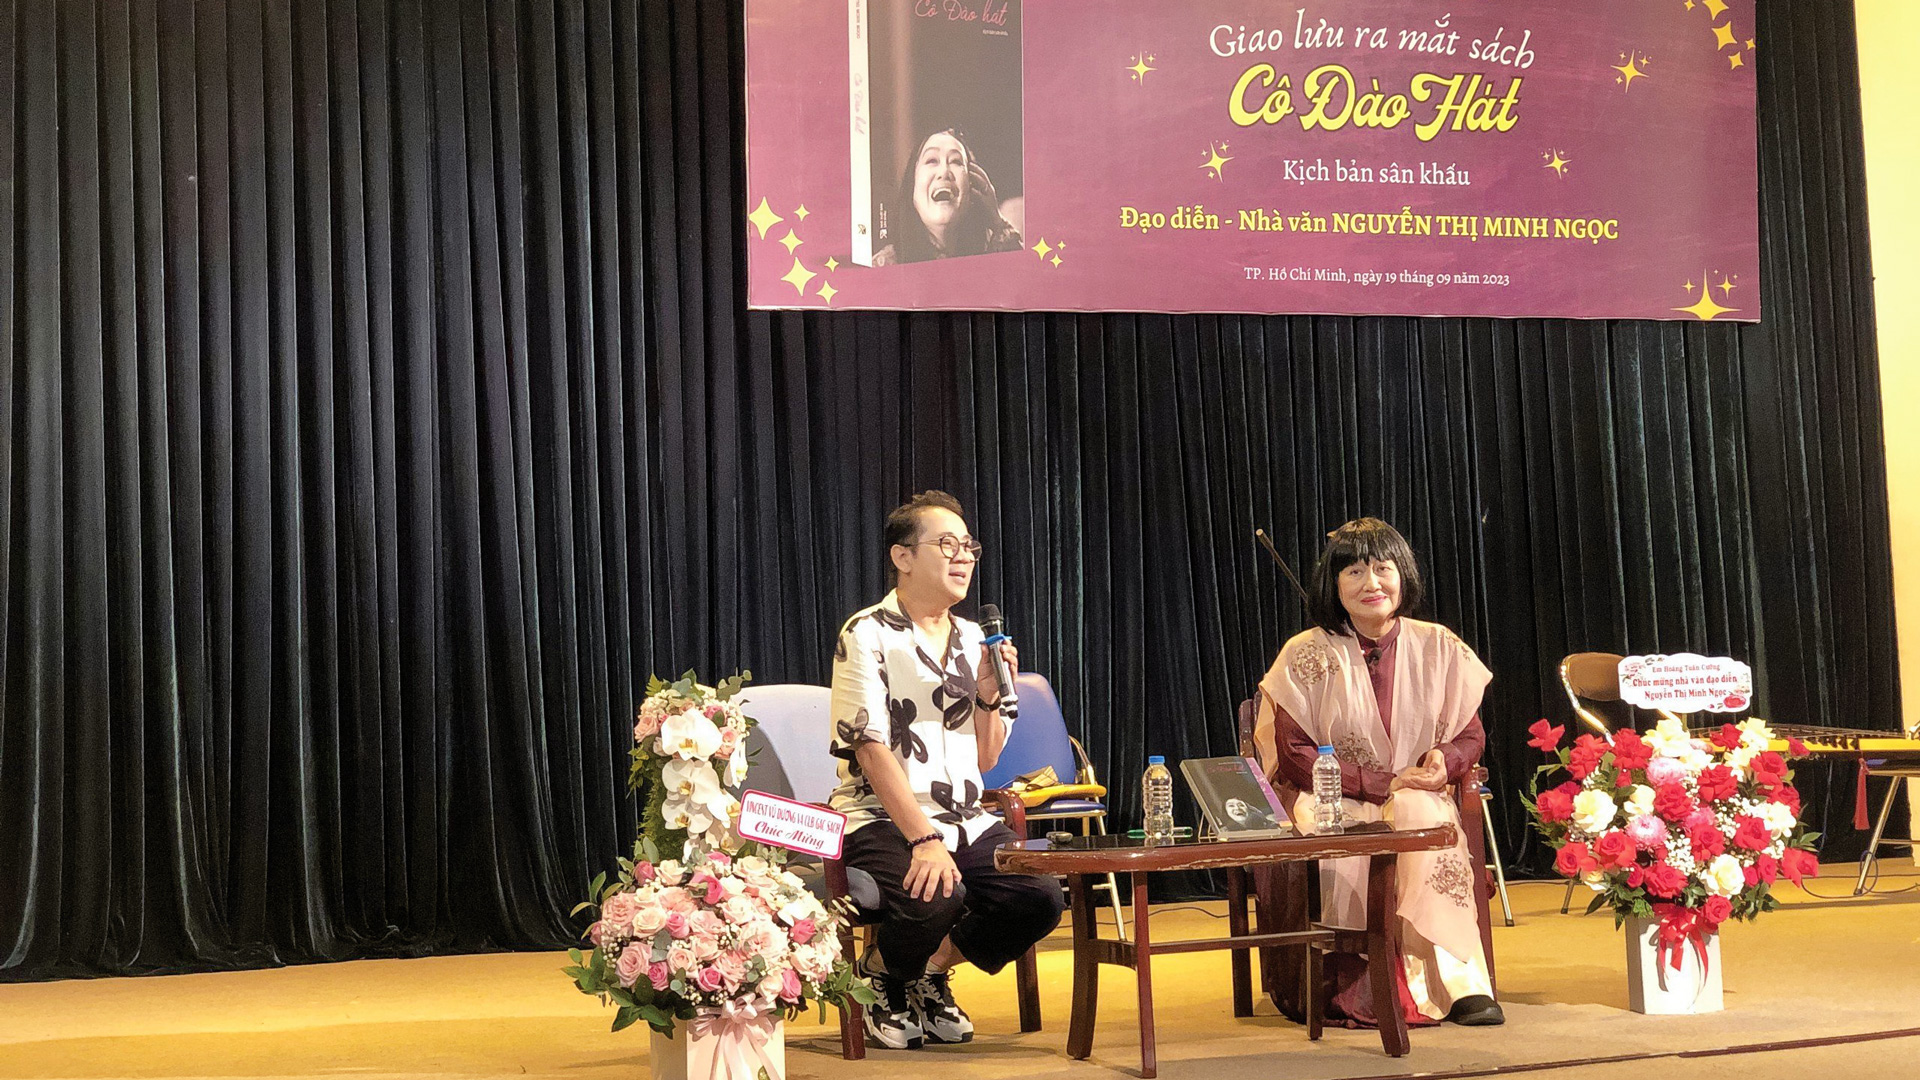 Nhà văn Nguyễn Thị Minh Ngọc cùng với nghệ sỹ Thành Lộc